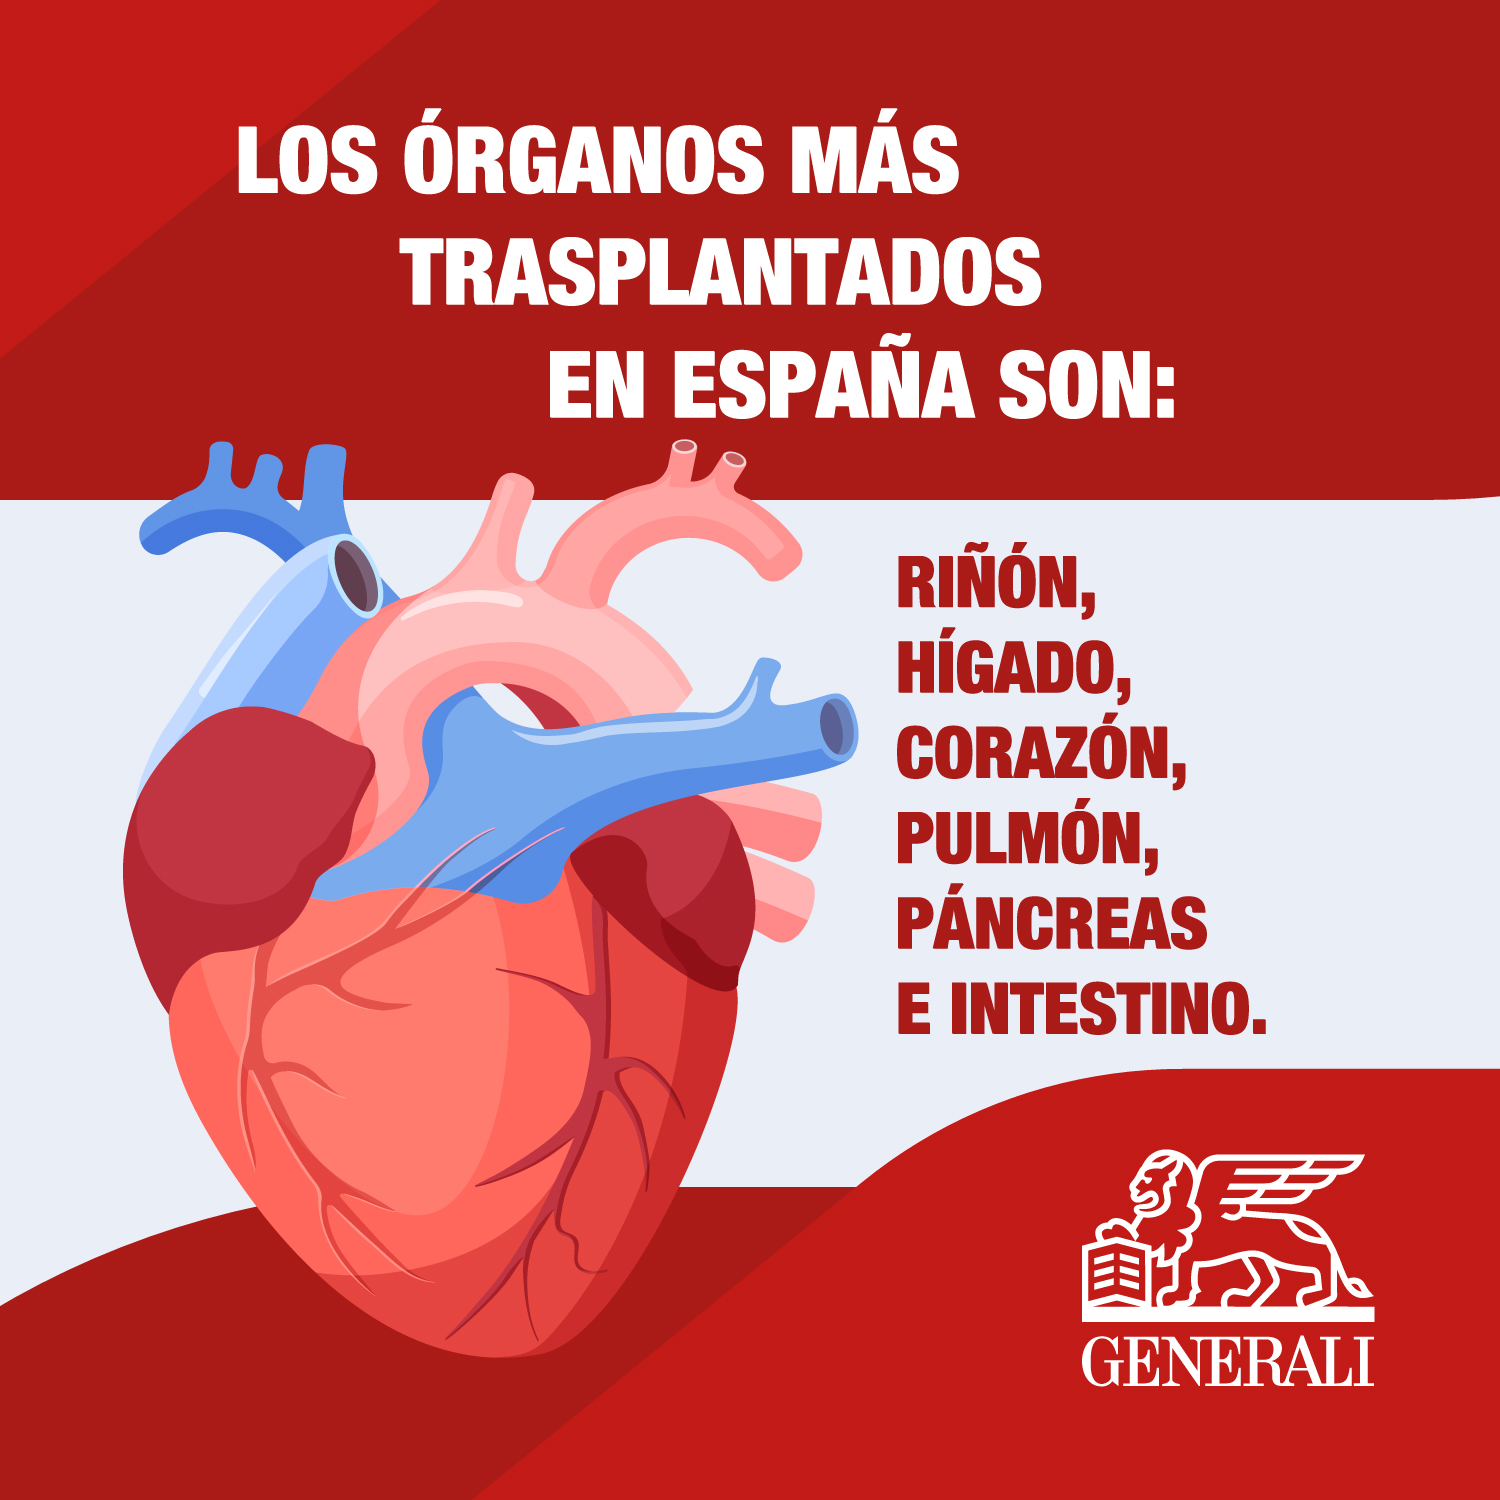 1562466_Generali-Spain-How-to-donate-organs-in-Spain-opt4_020723.jpg